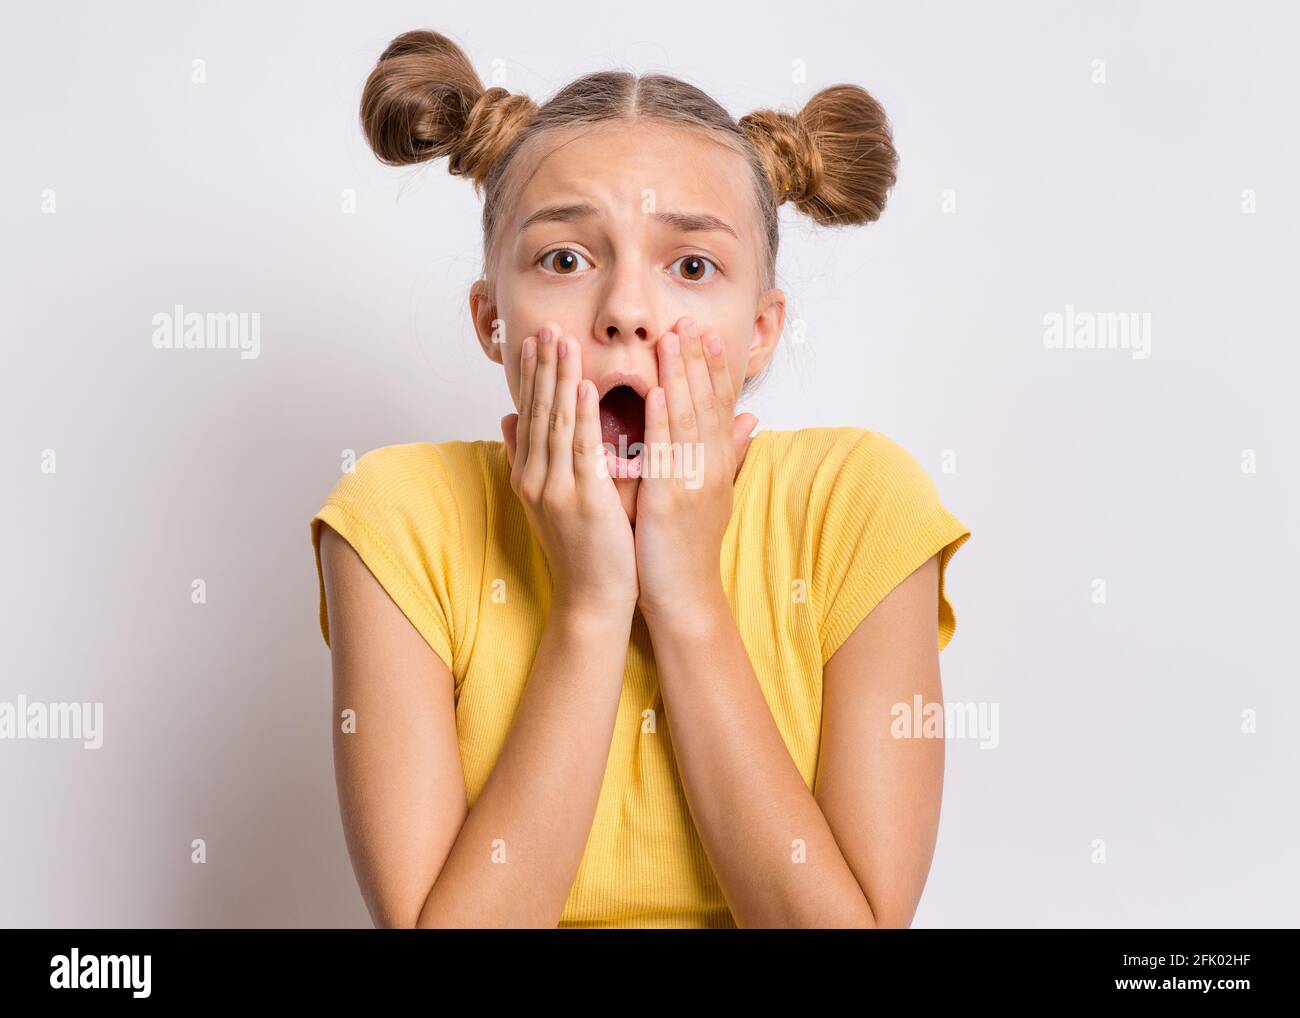 Emotionales Porträt eines verängstigten Teenagers, überrascht mit Angst in ihren Augen. Menschen und menschliche Ausdrücke und Emotionen Konzept Stockfoto